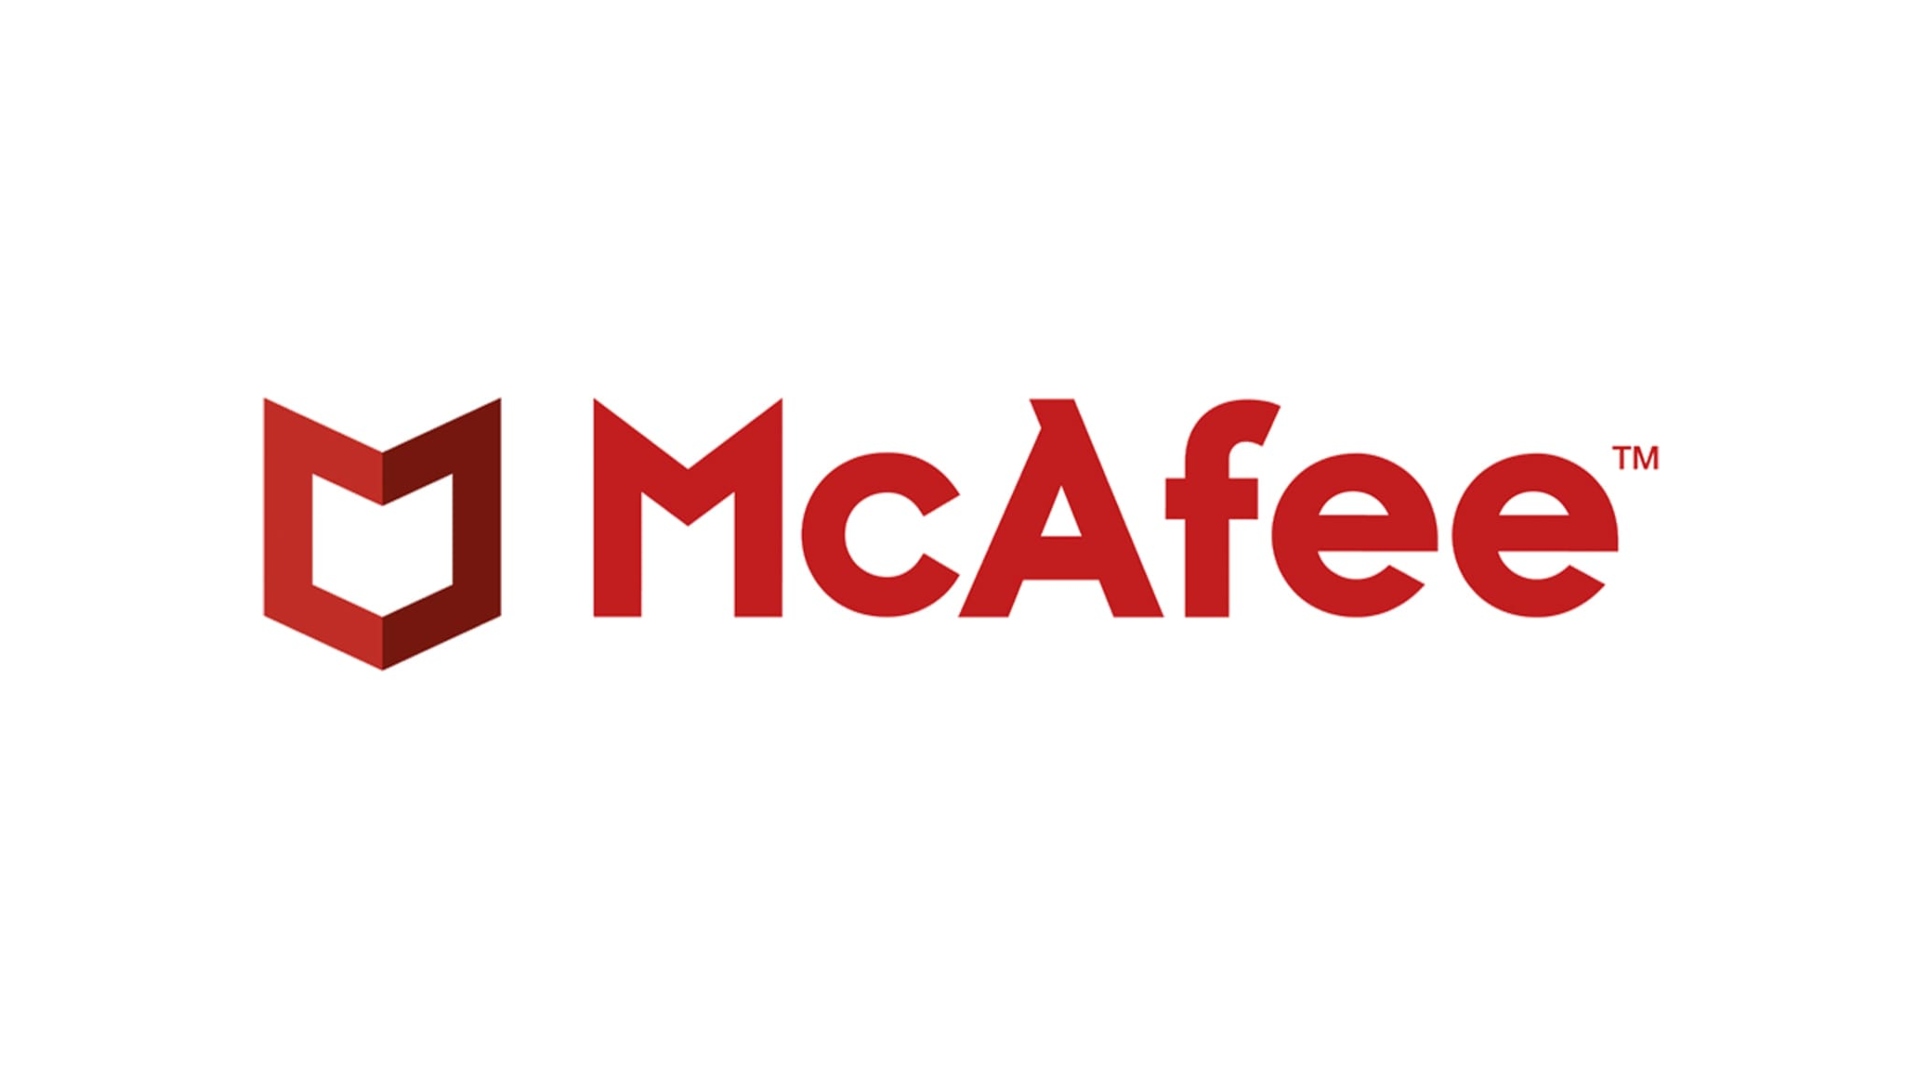 Mejor antivirus: McAfee escrito en rojo sobre un fondo blanco junto con su insignia